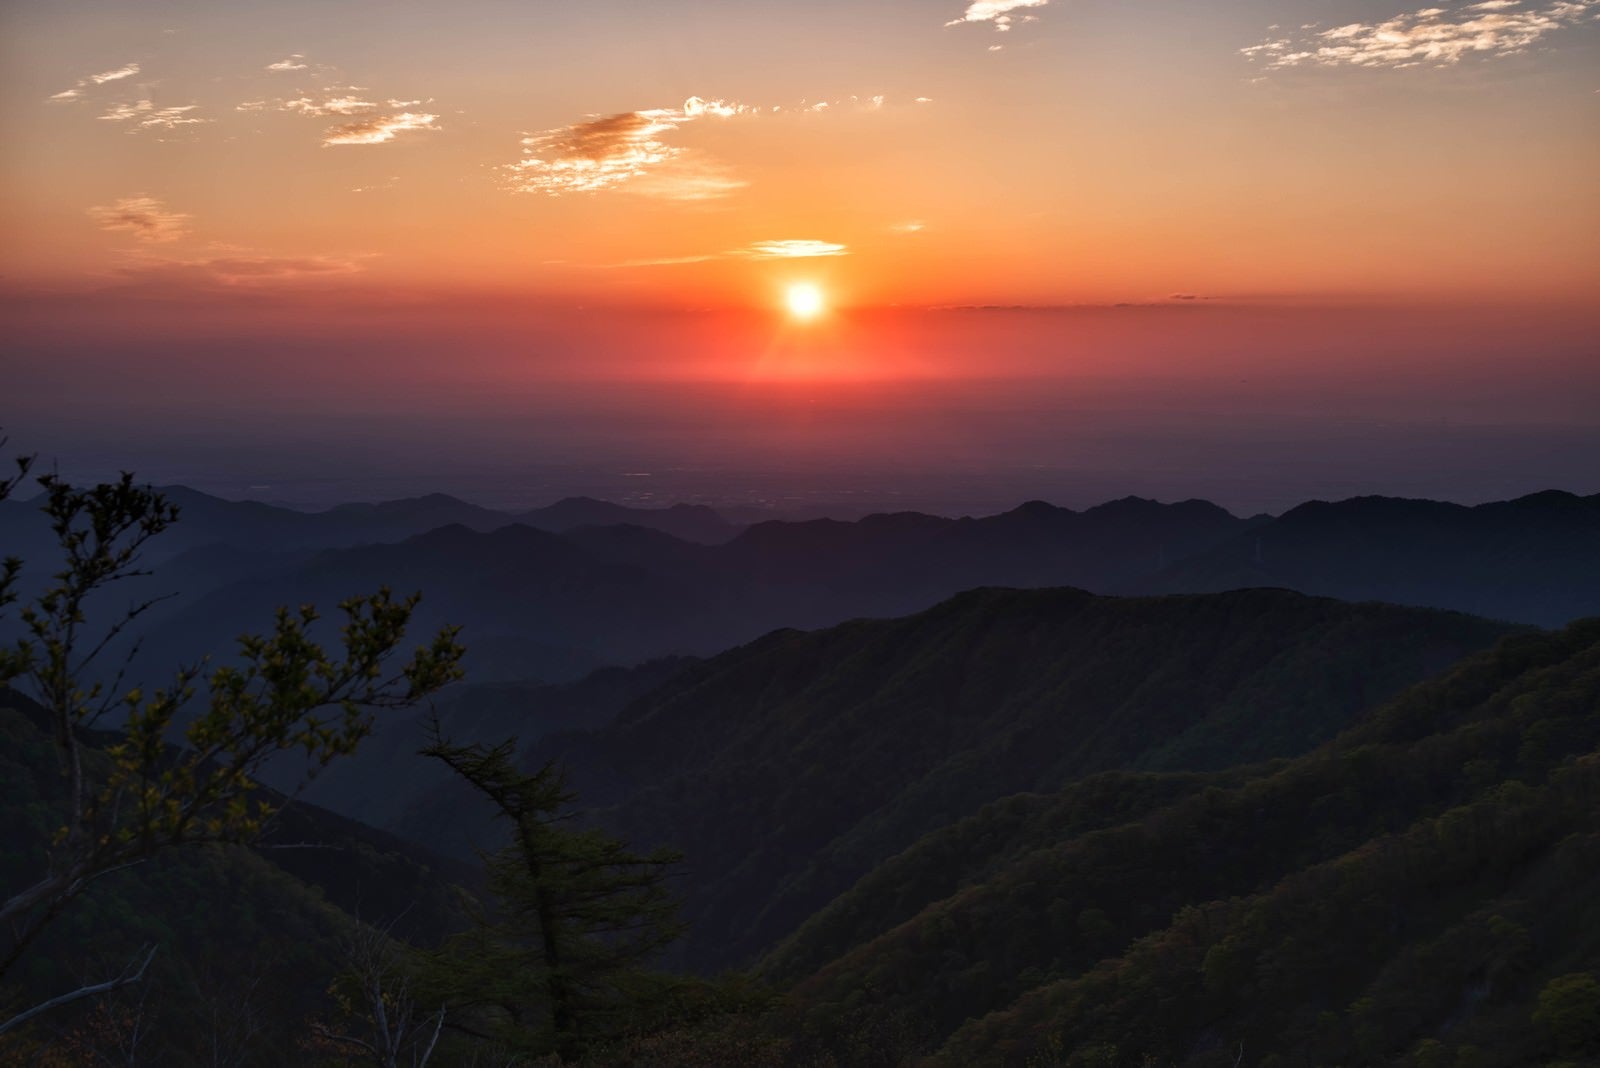 「関東平野から昇る朝日」の写真